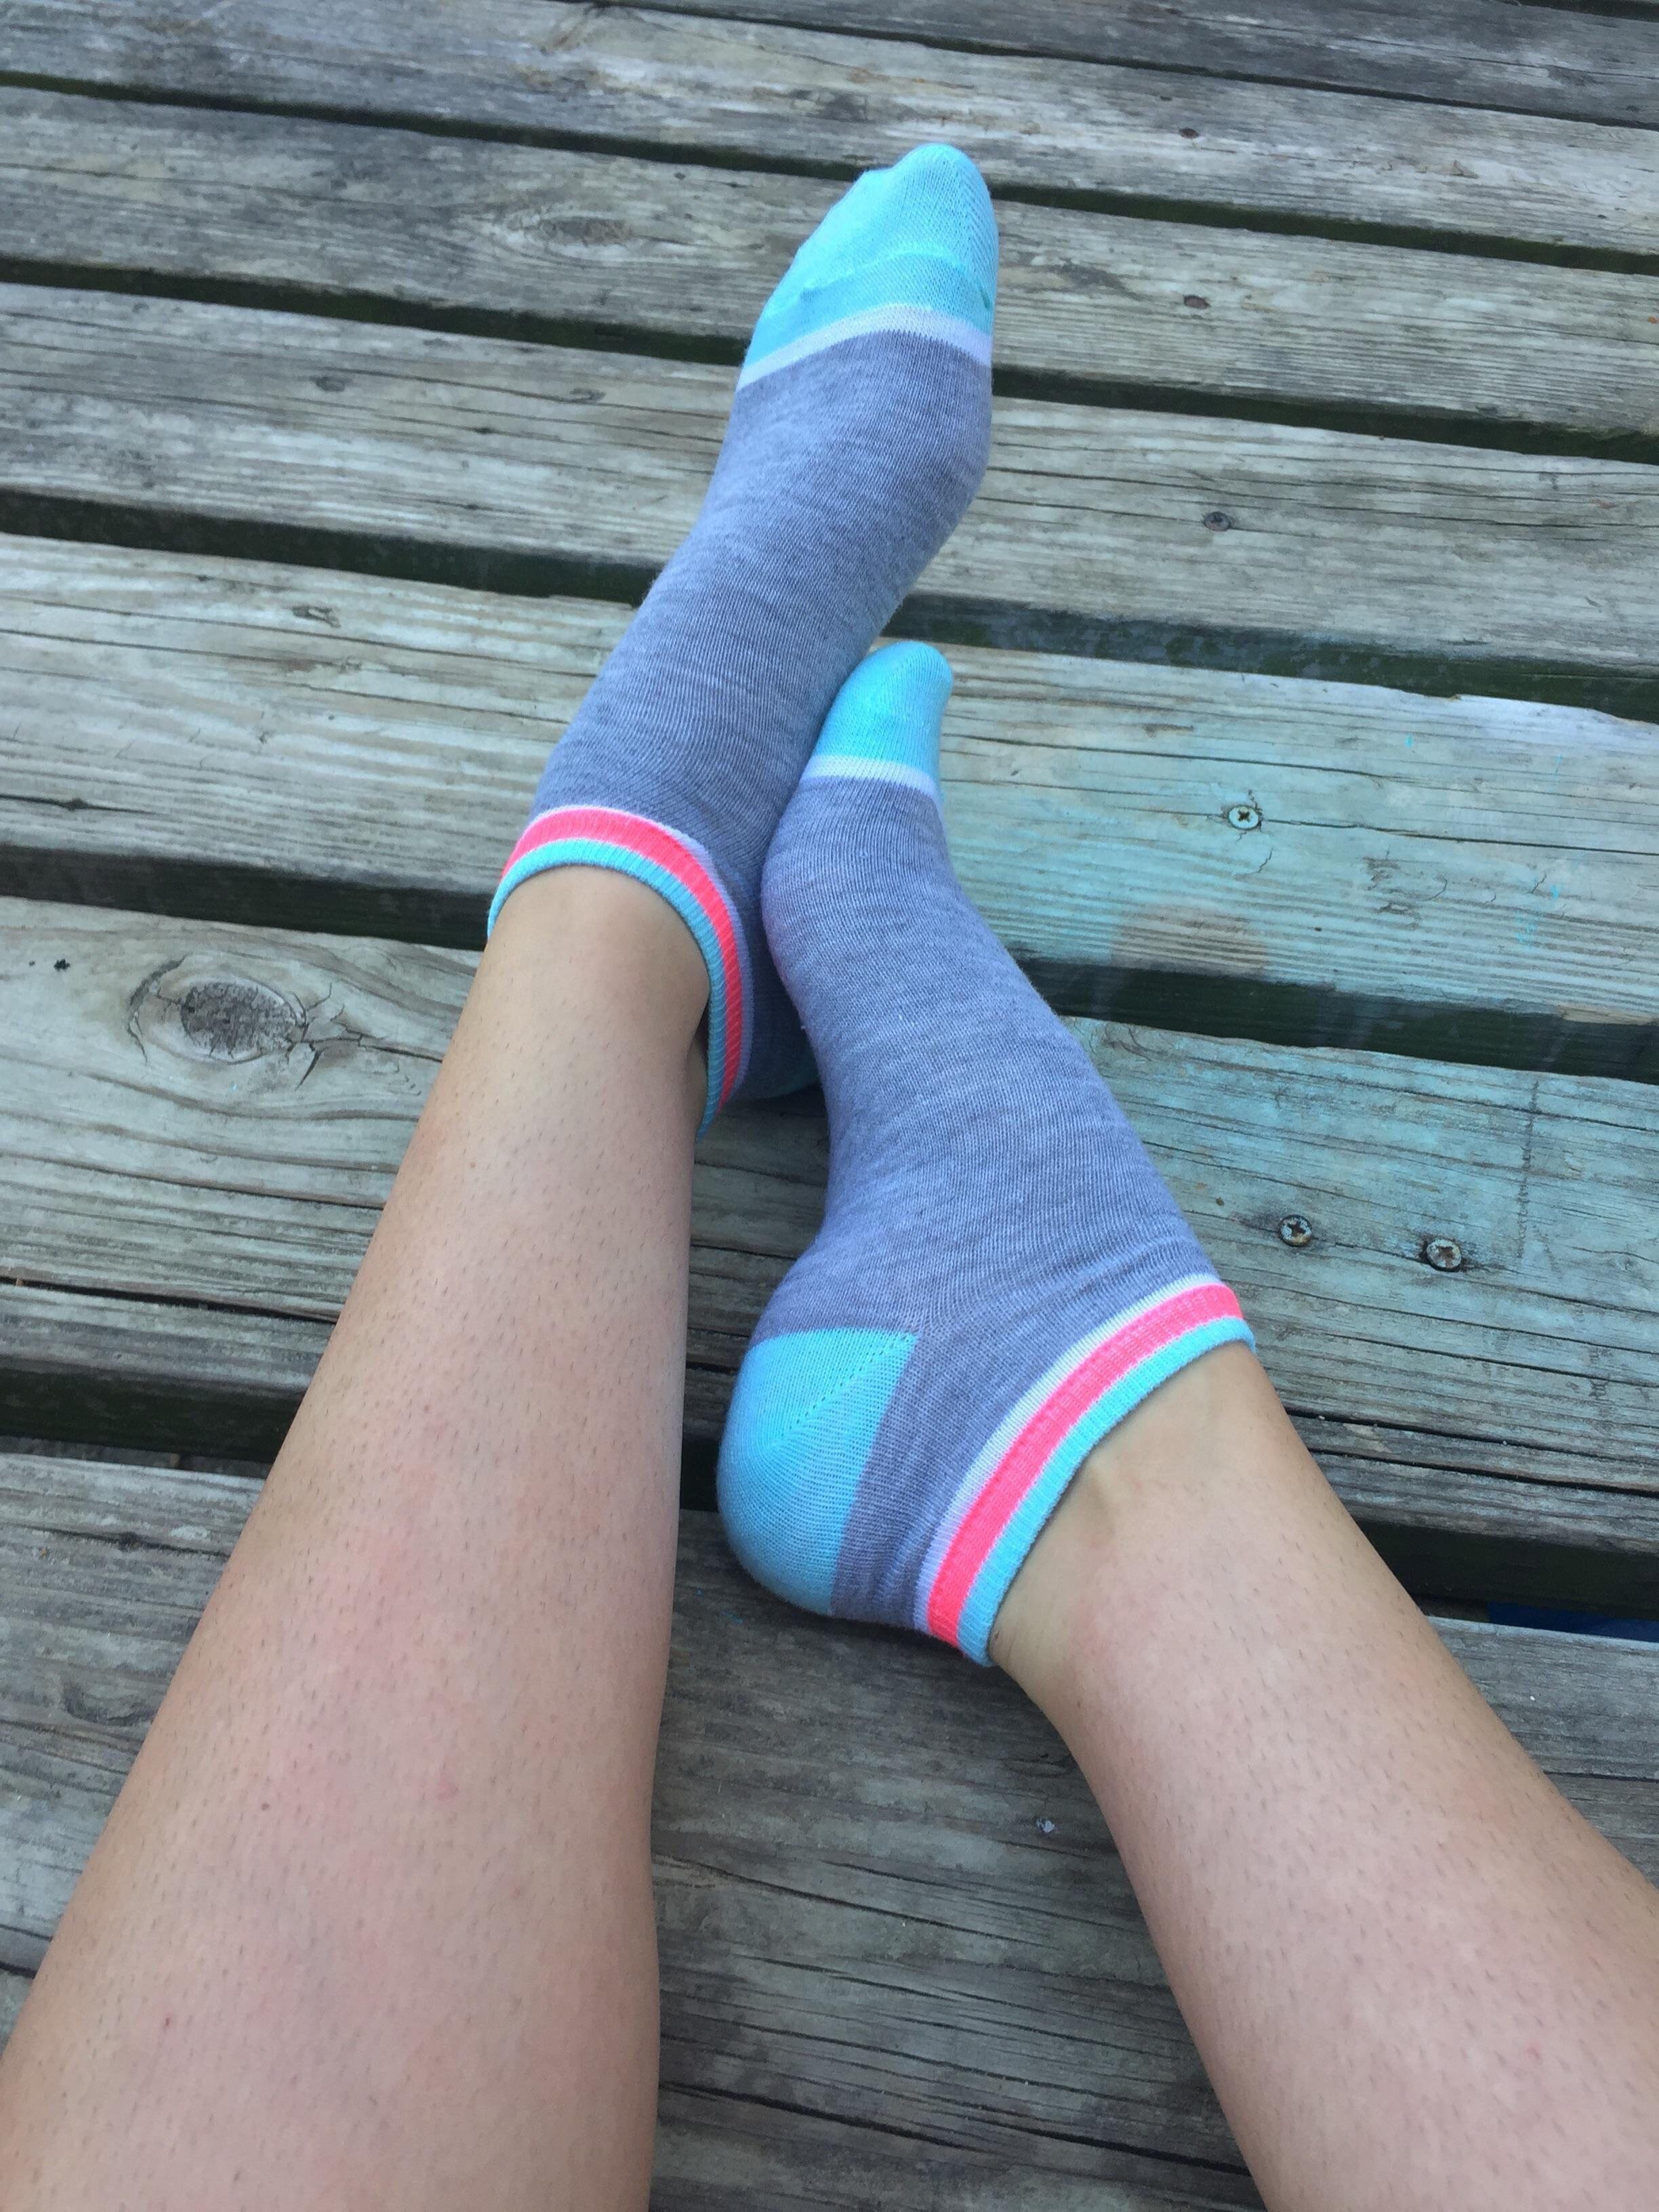 Pretty socks on pretty feet